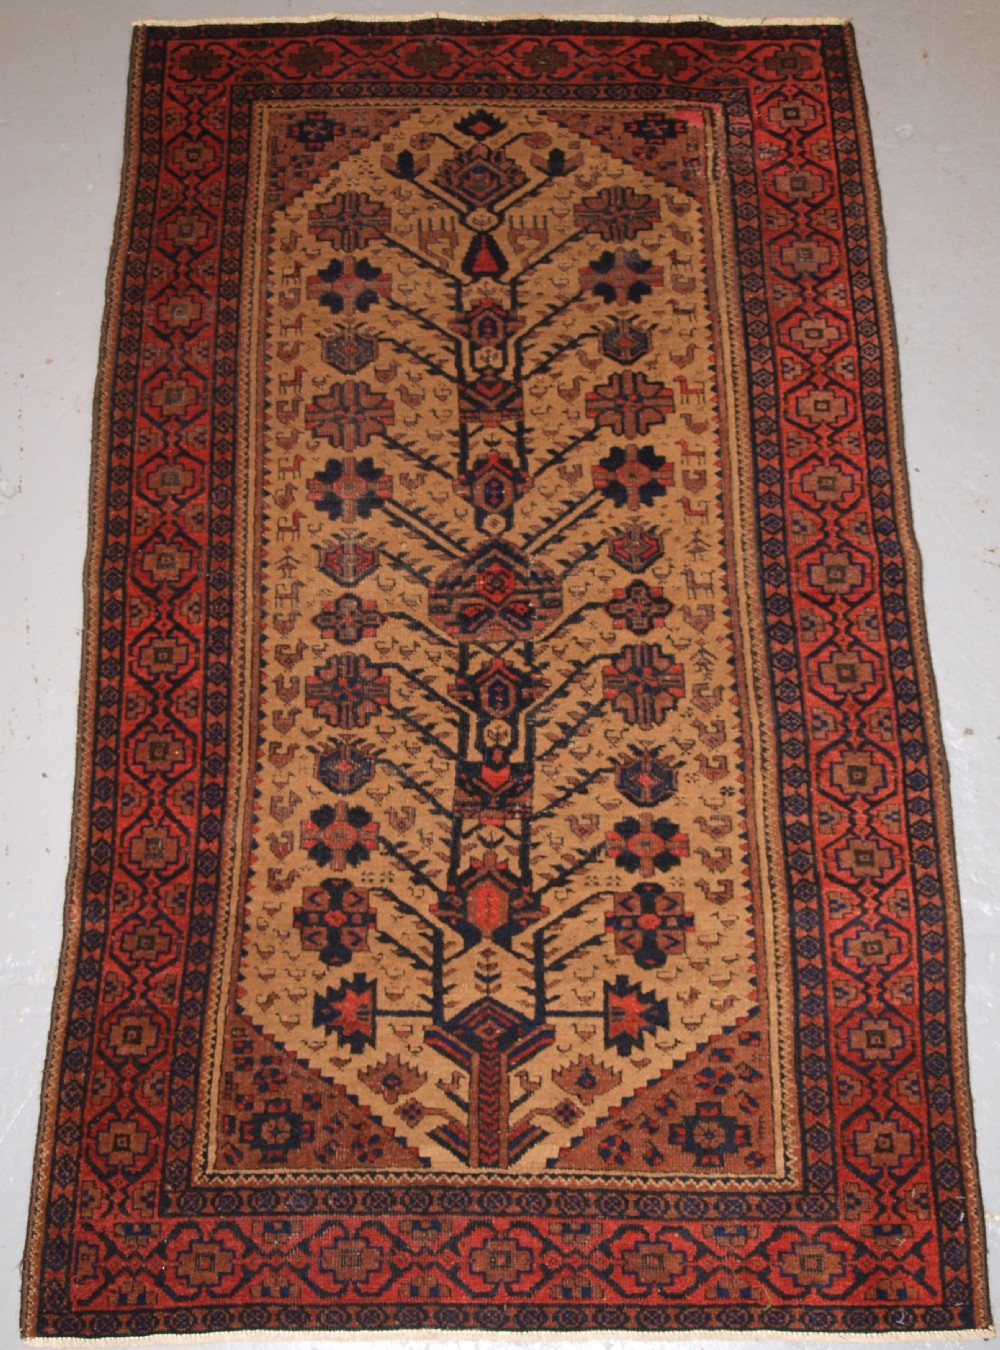 antique baluch ferdows region rug camel ground tree design late 19th century